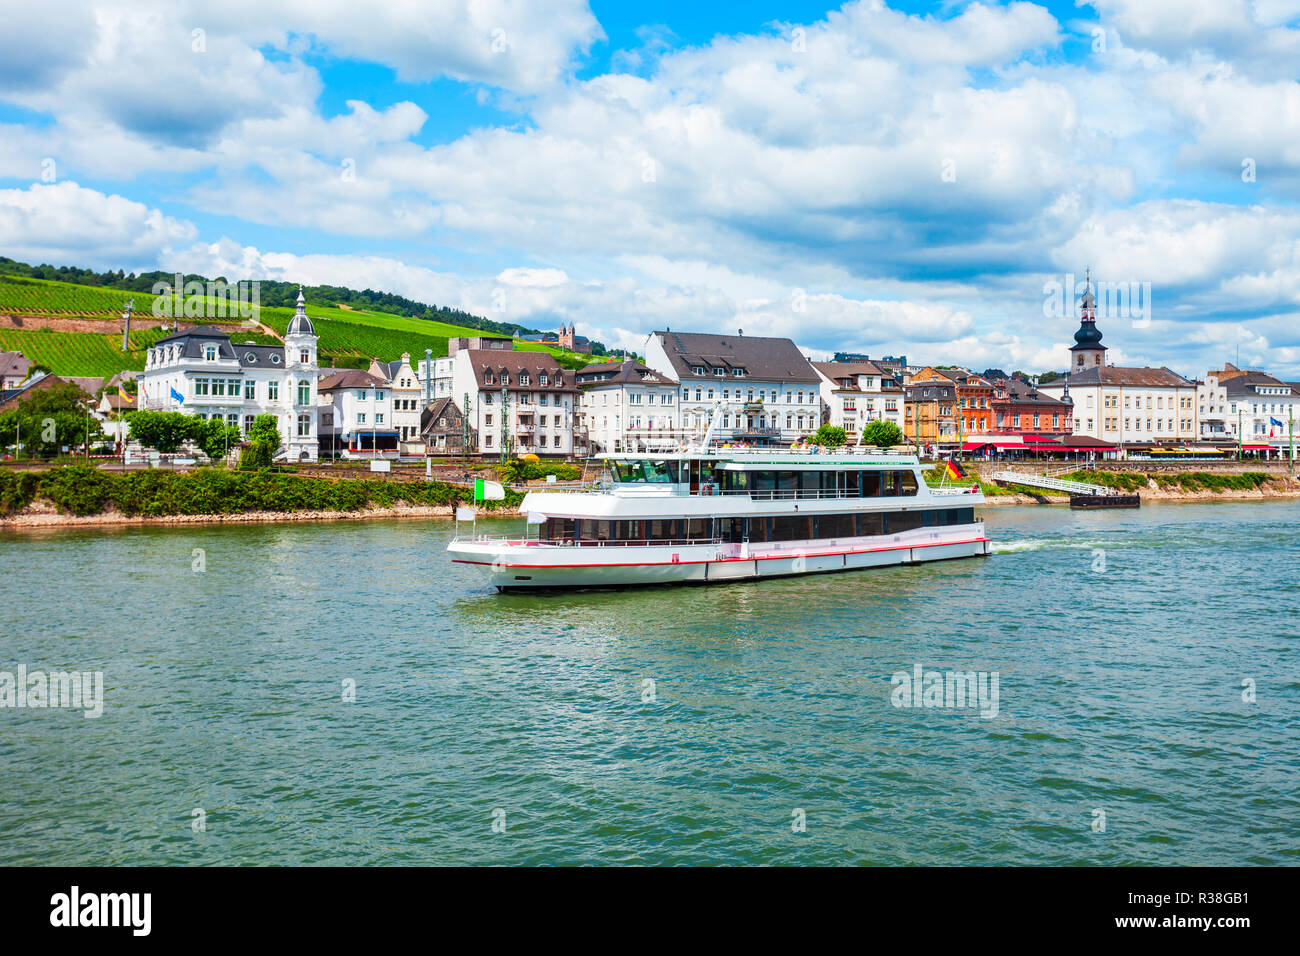 Touristische wasserbecher Boot in der Nähe der Stadt Bingen am Rhein Am  Rhein Valley in Deutschland Stockfotografie - Alamy